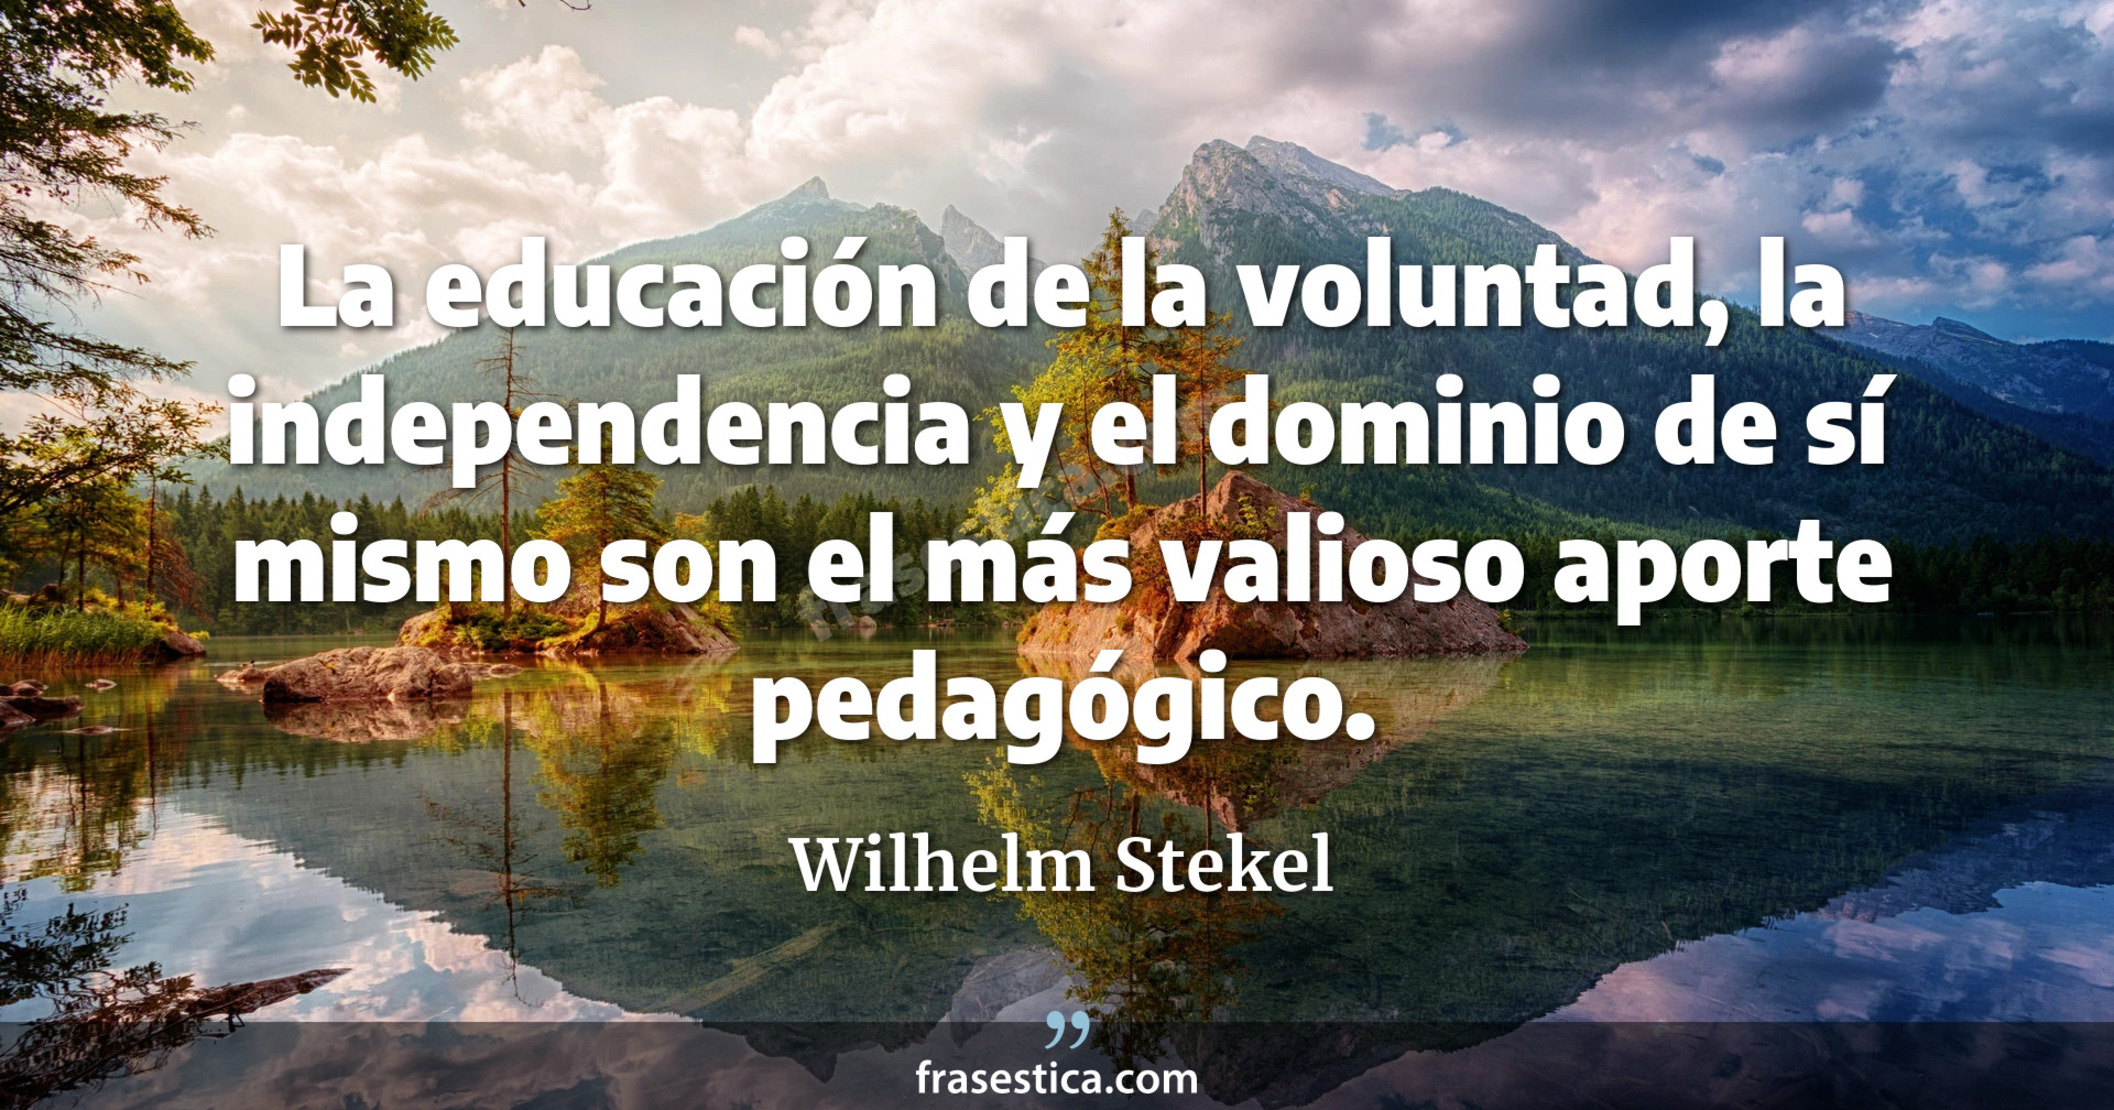 La educación de la voluntad, la independencia y el dominio de sí mismo son el más valioso aporte pedagógico. - Wilhelm Stekel